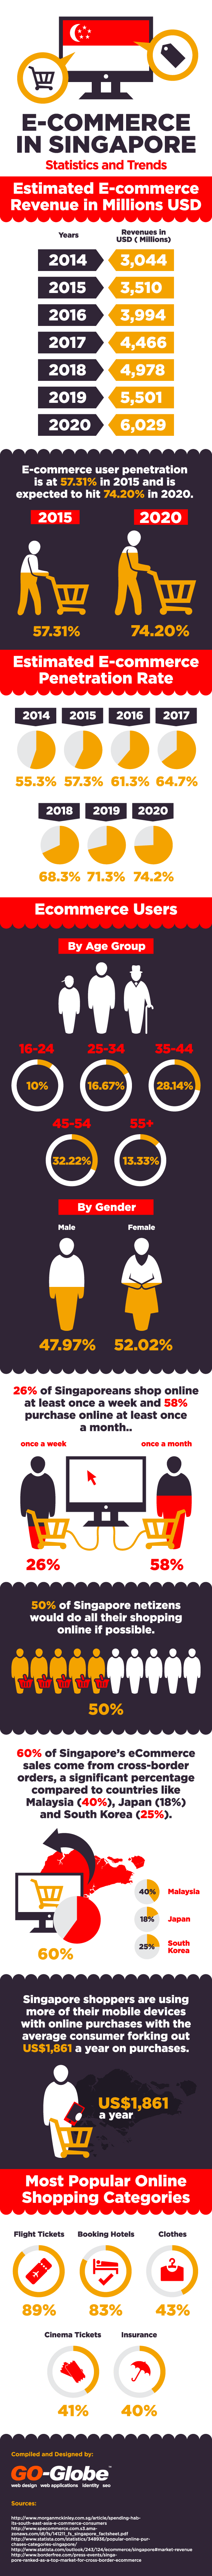 E-commerce in Singapore